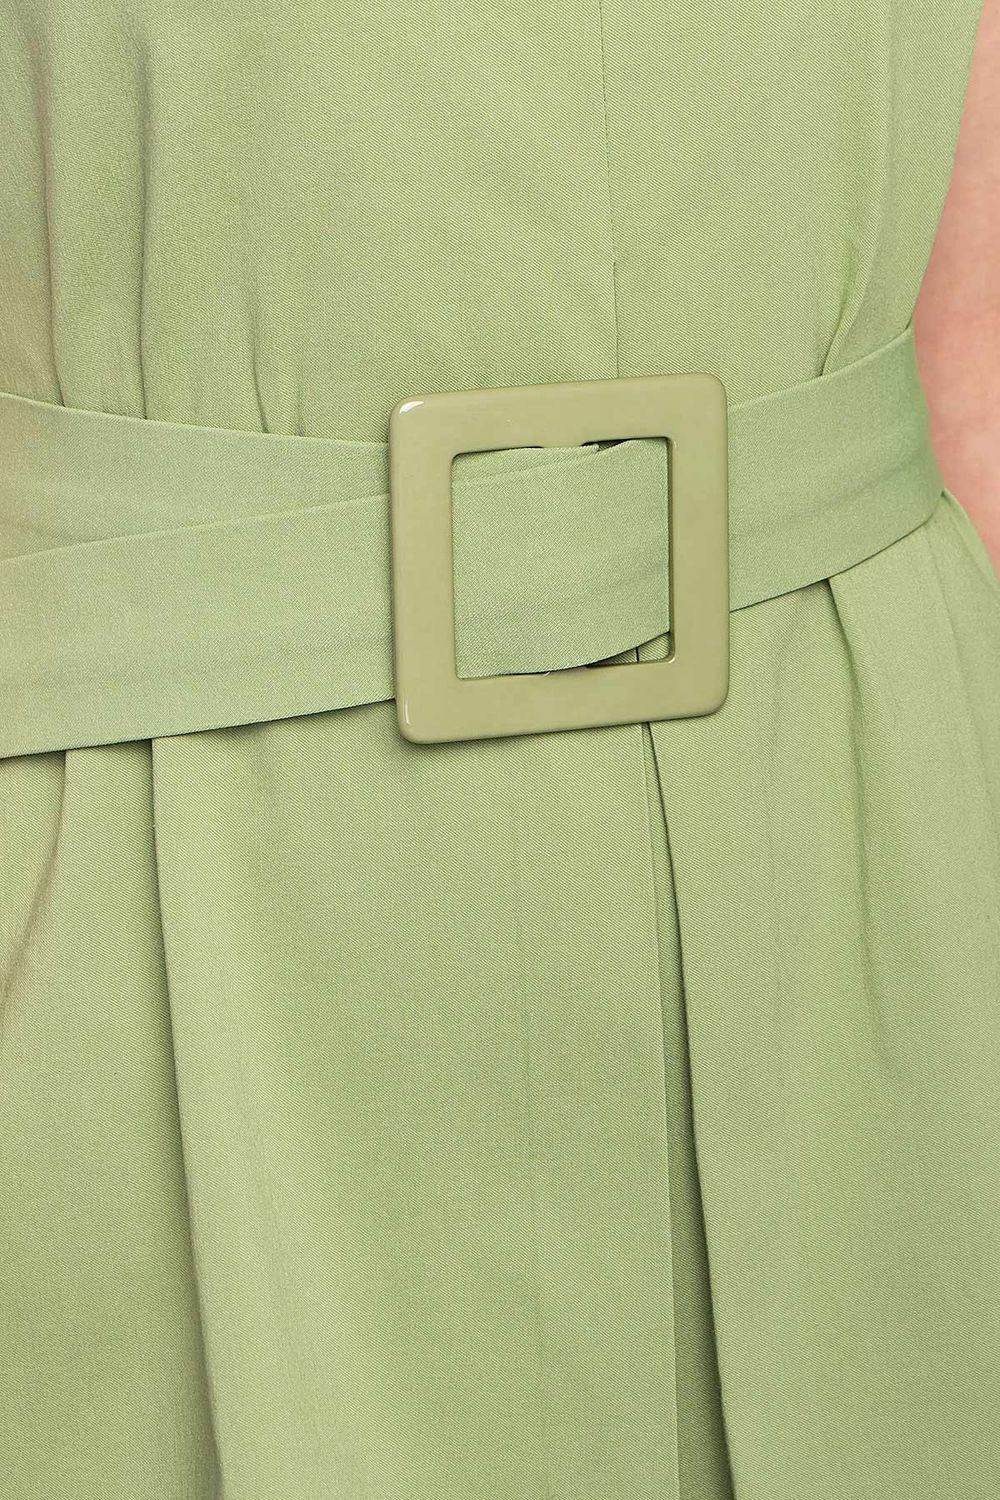 Летнее платье трапеция из хлопка зеленое - фото